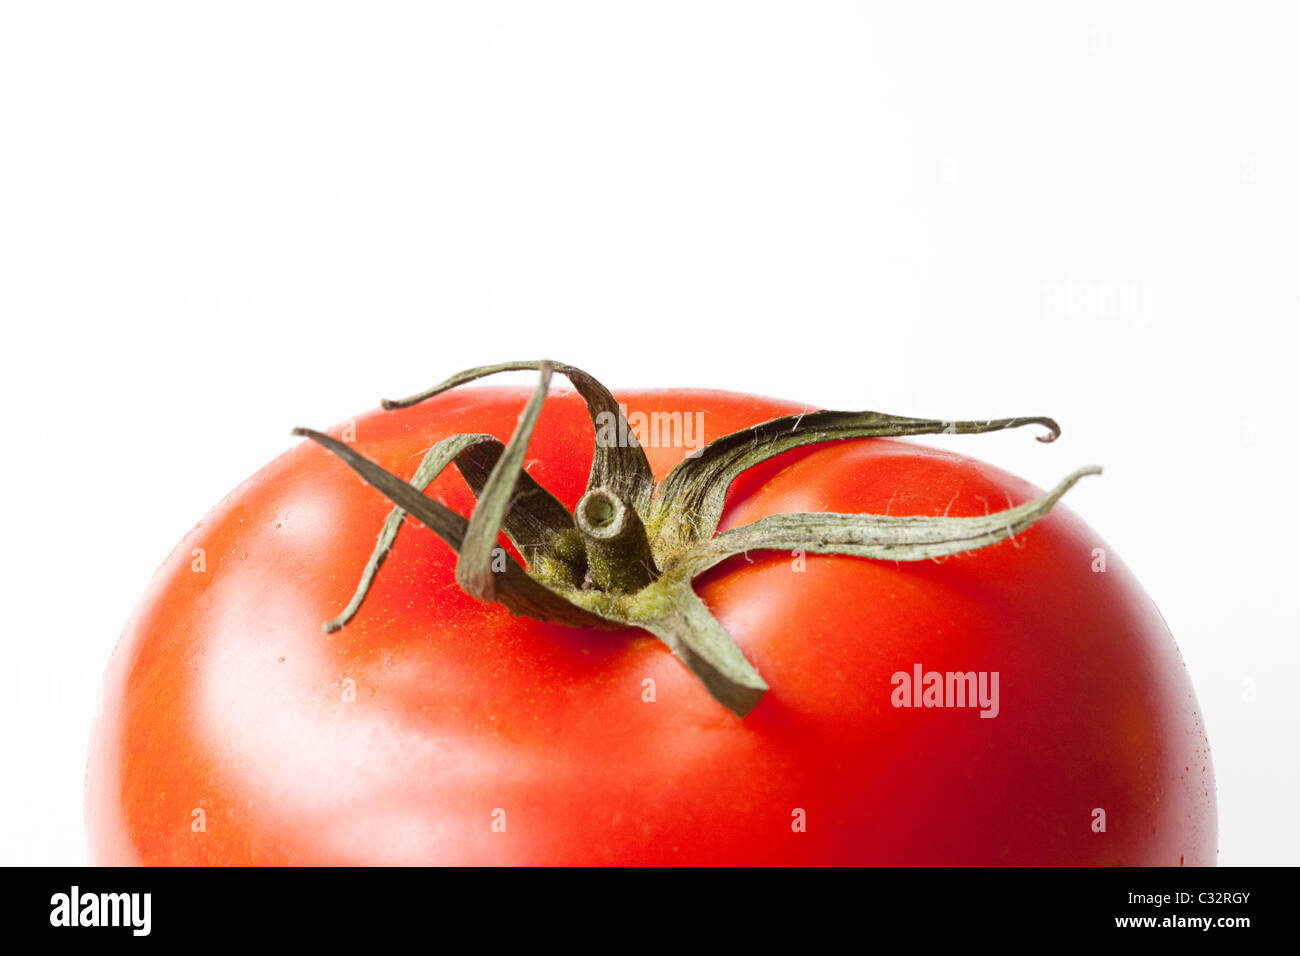 Tomato on white background Stock Photo